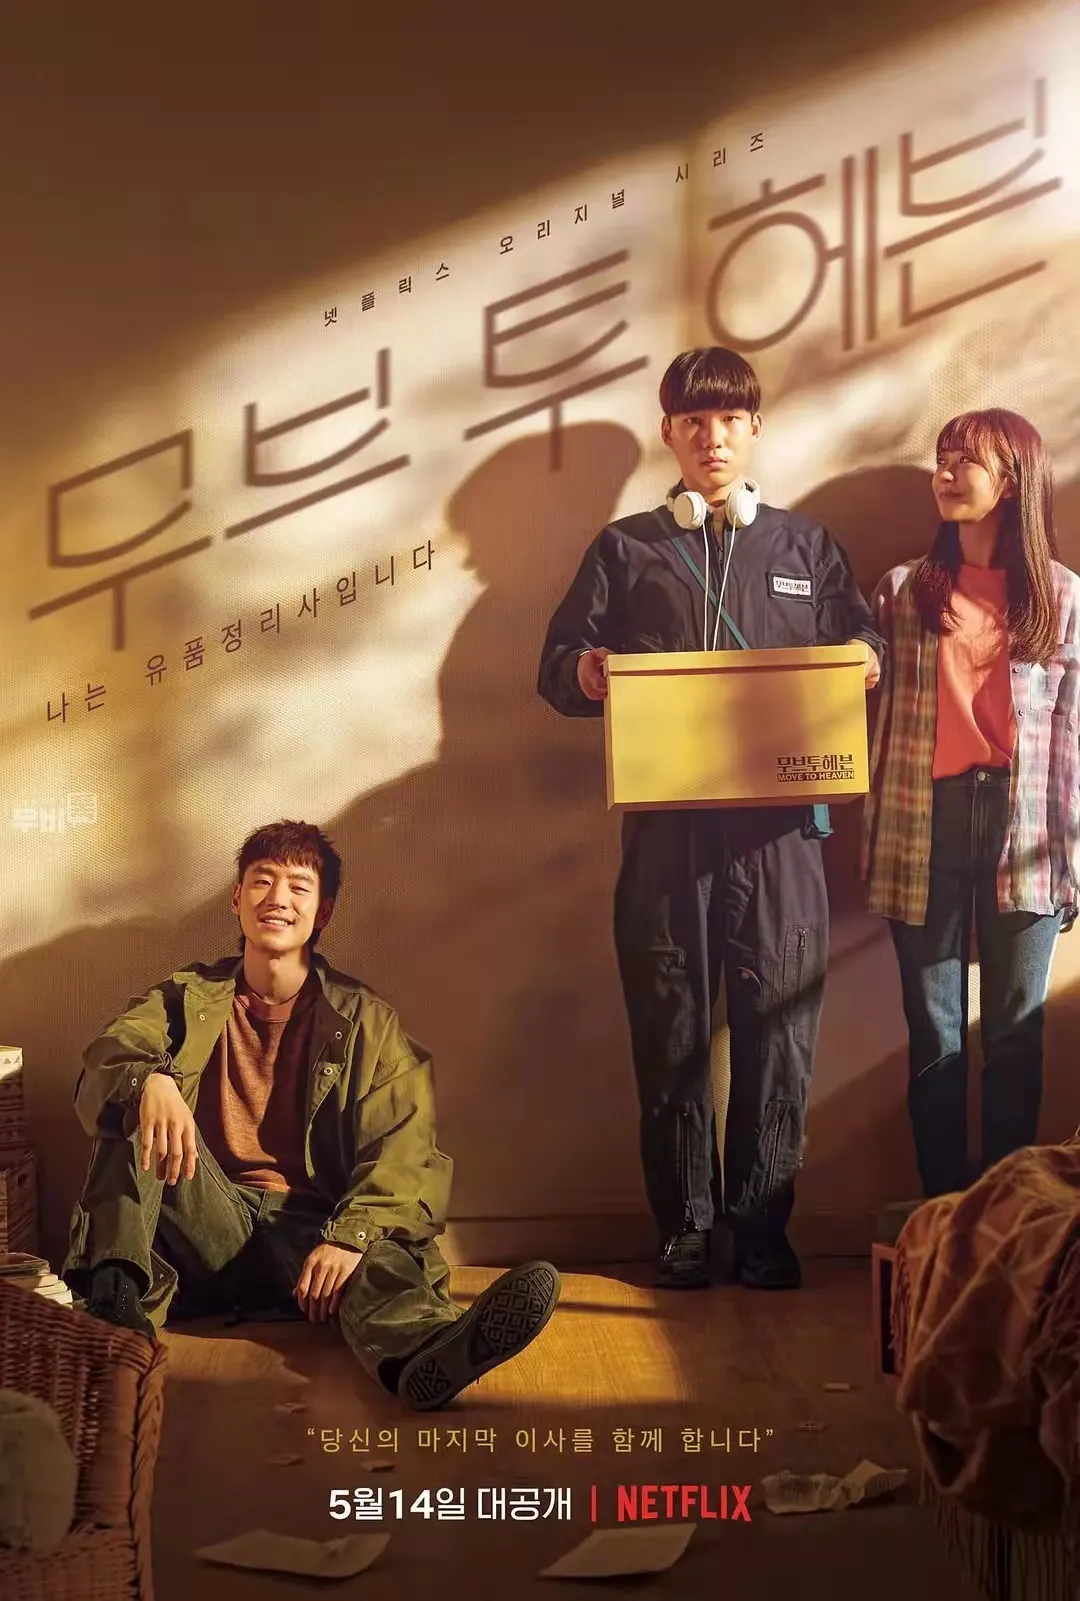 除了鱿鱼游戏，这四个小人物Netflix原装韩国剧本更有价值